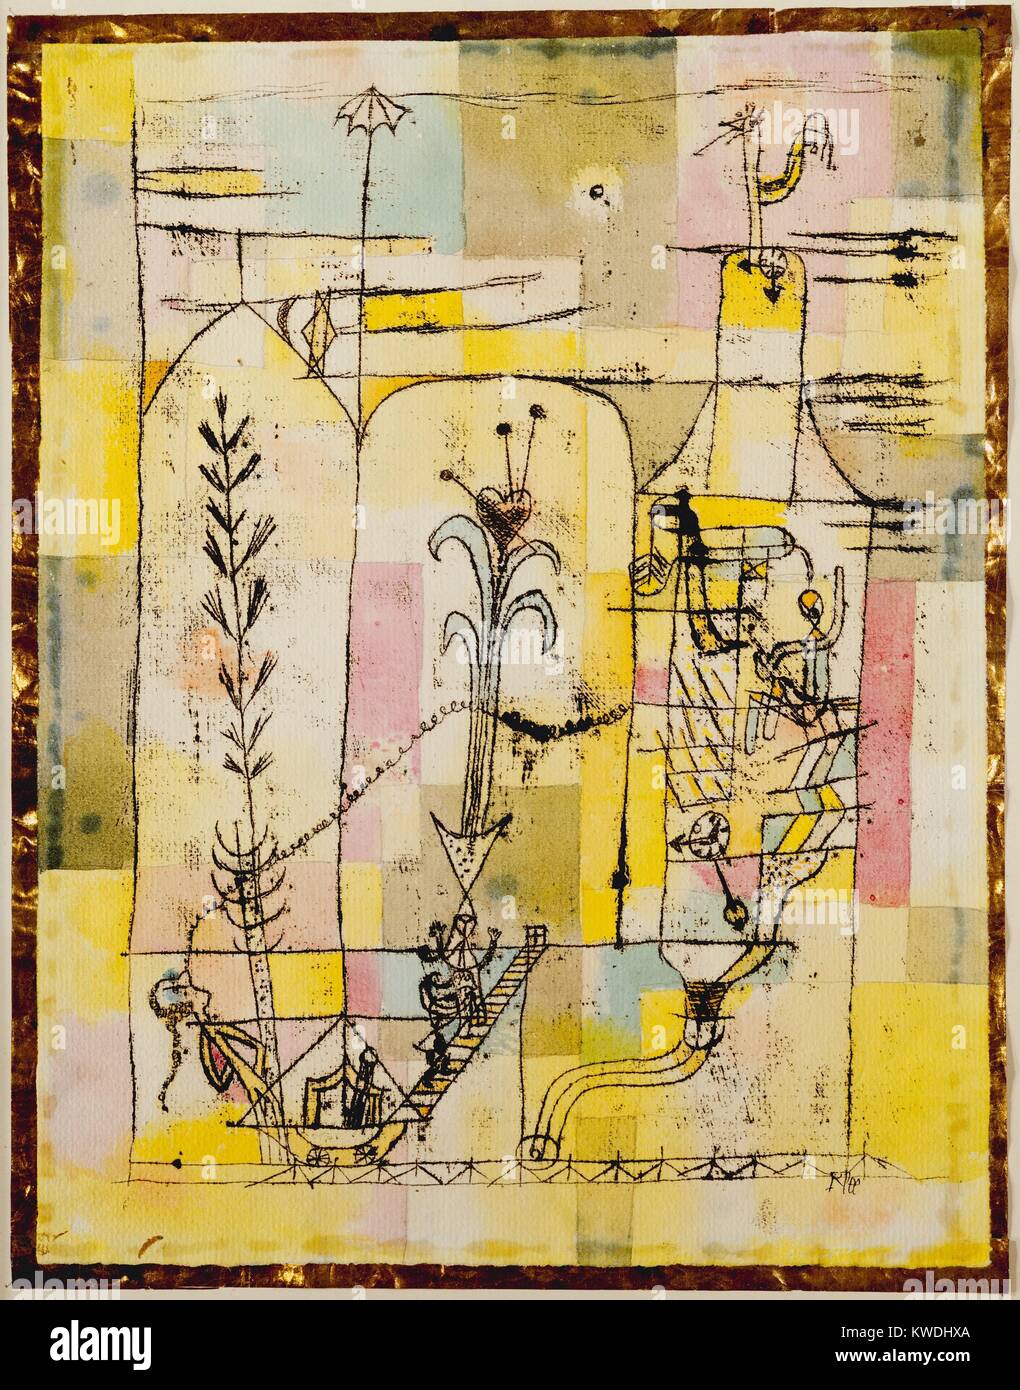 Un conte de LA HOFFMANN, de Paul Klee, 1921, aquarelle, mine de plomb, encre sur papier. Inspiré par le poète allemand E. T. A. Hoffmanns 1814 conte romantique, LE POT (BSLOC GOLDERN 2017 7 72) Banque D'Images